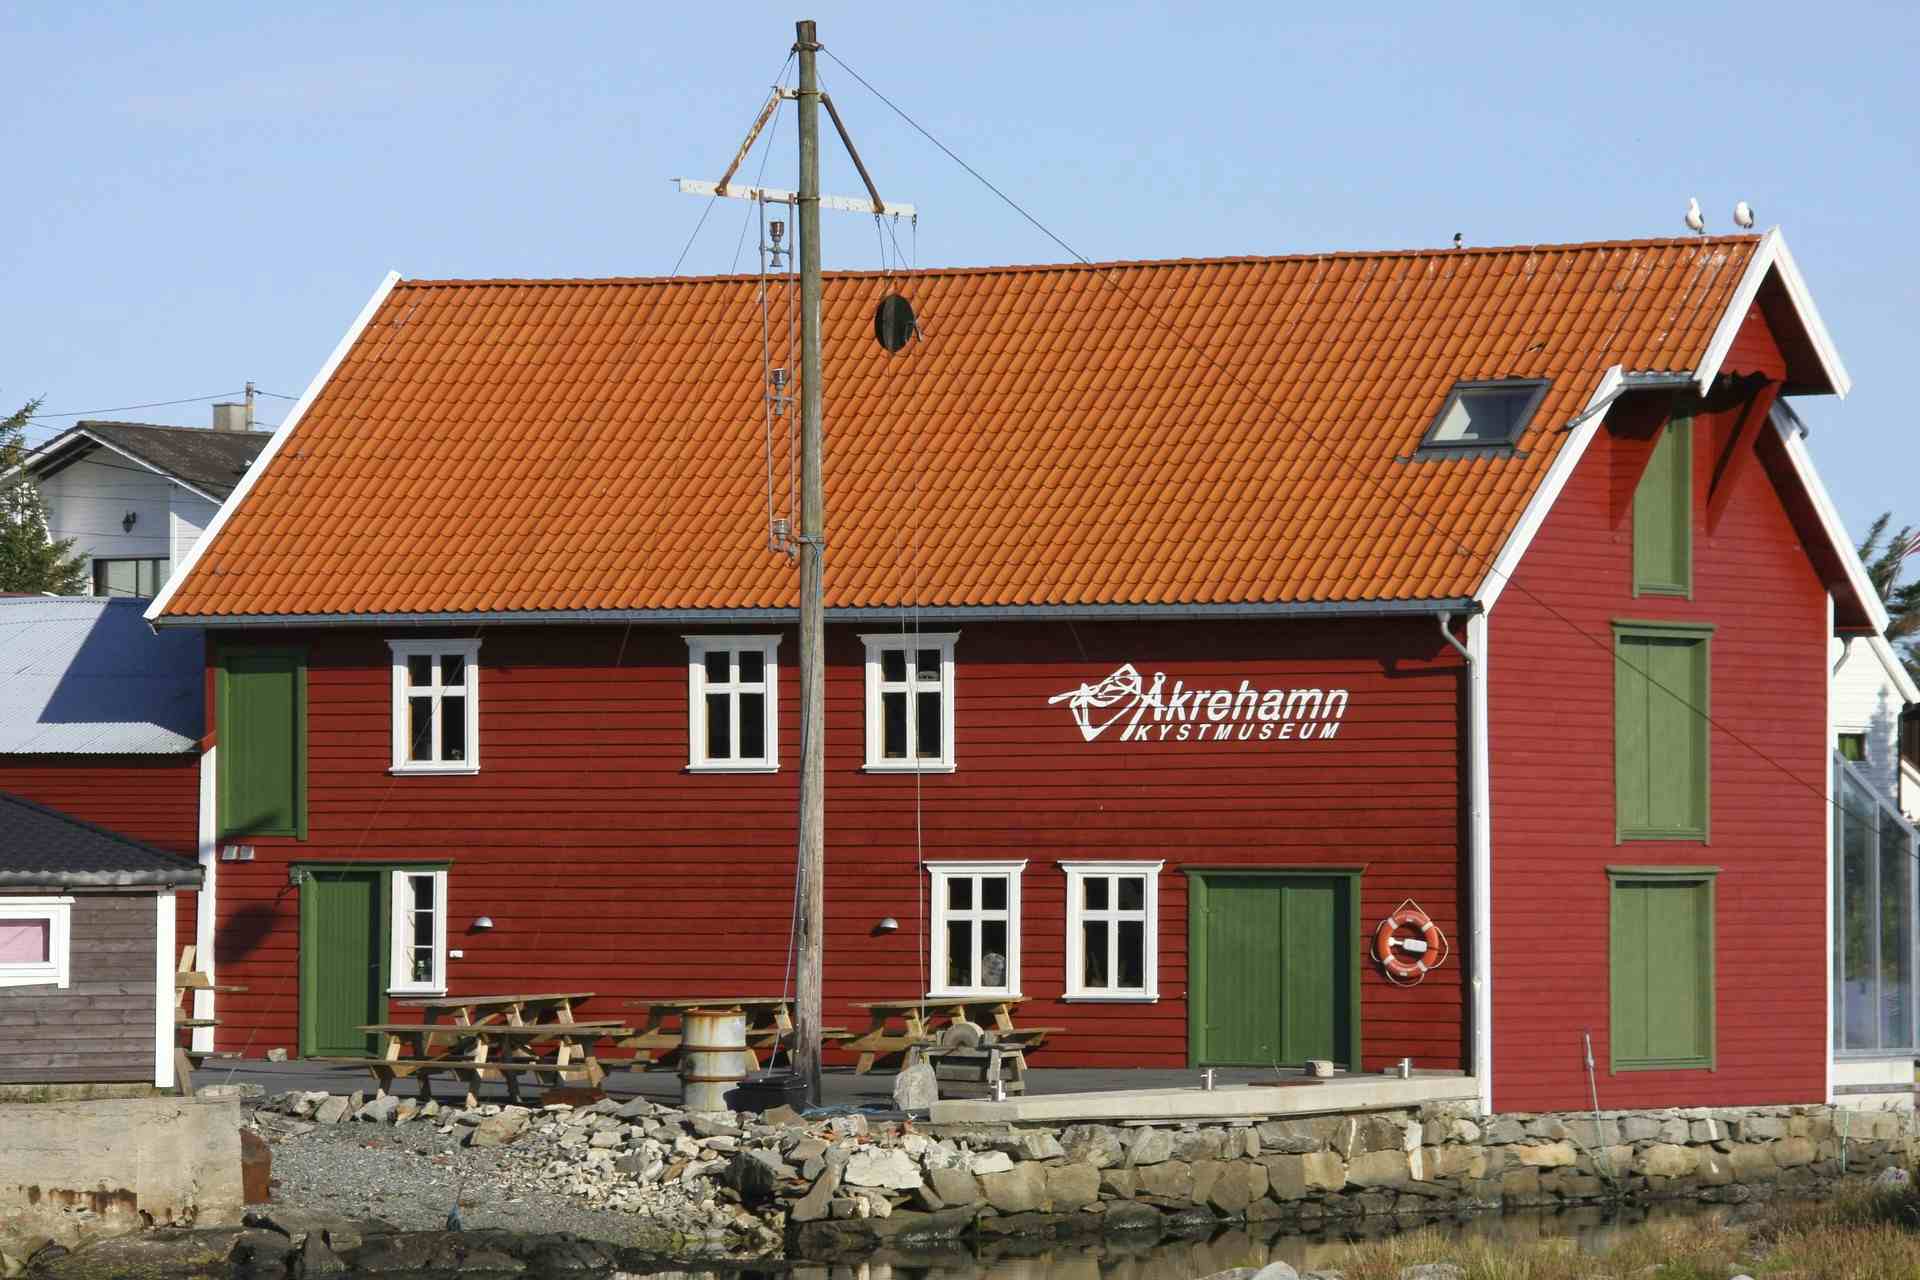 Åkrehamn Kystmuseum